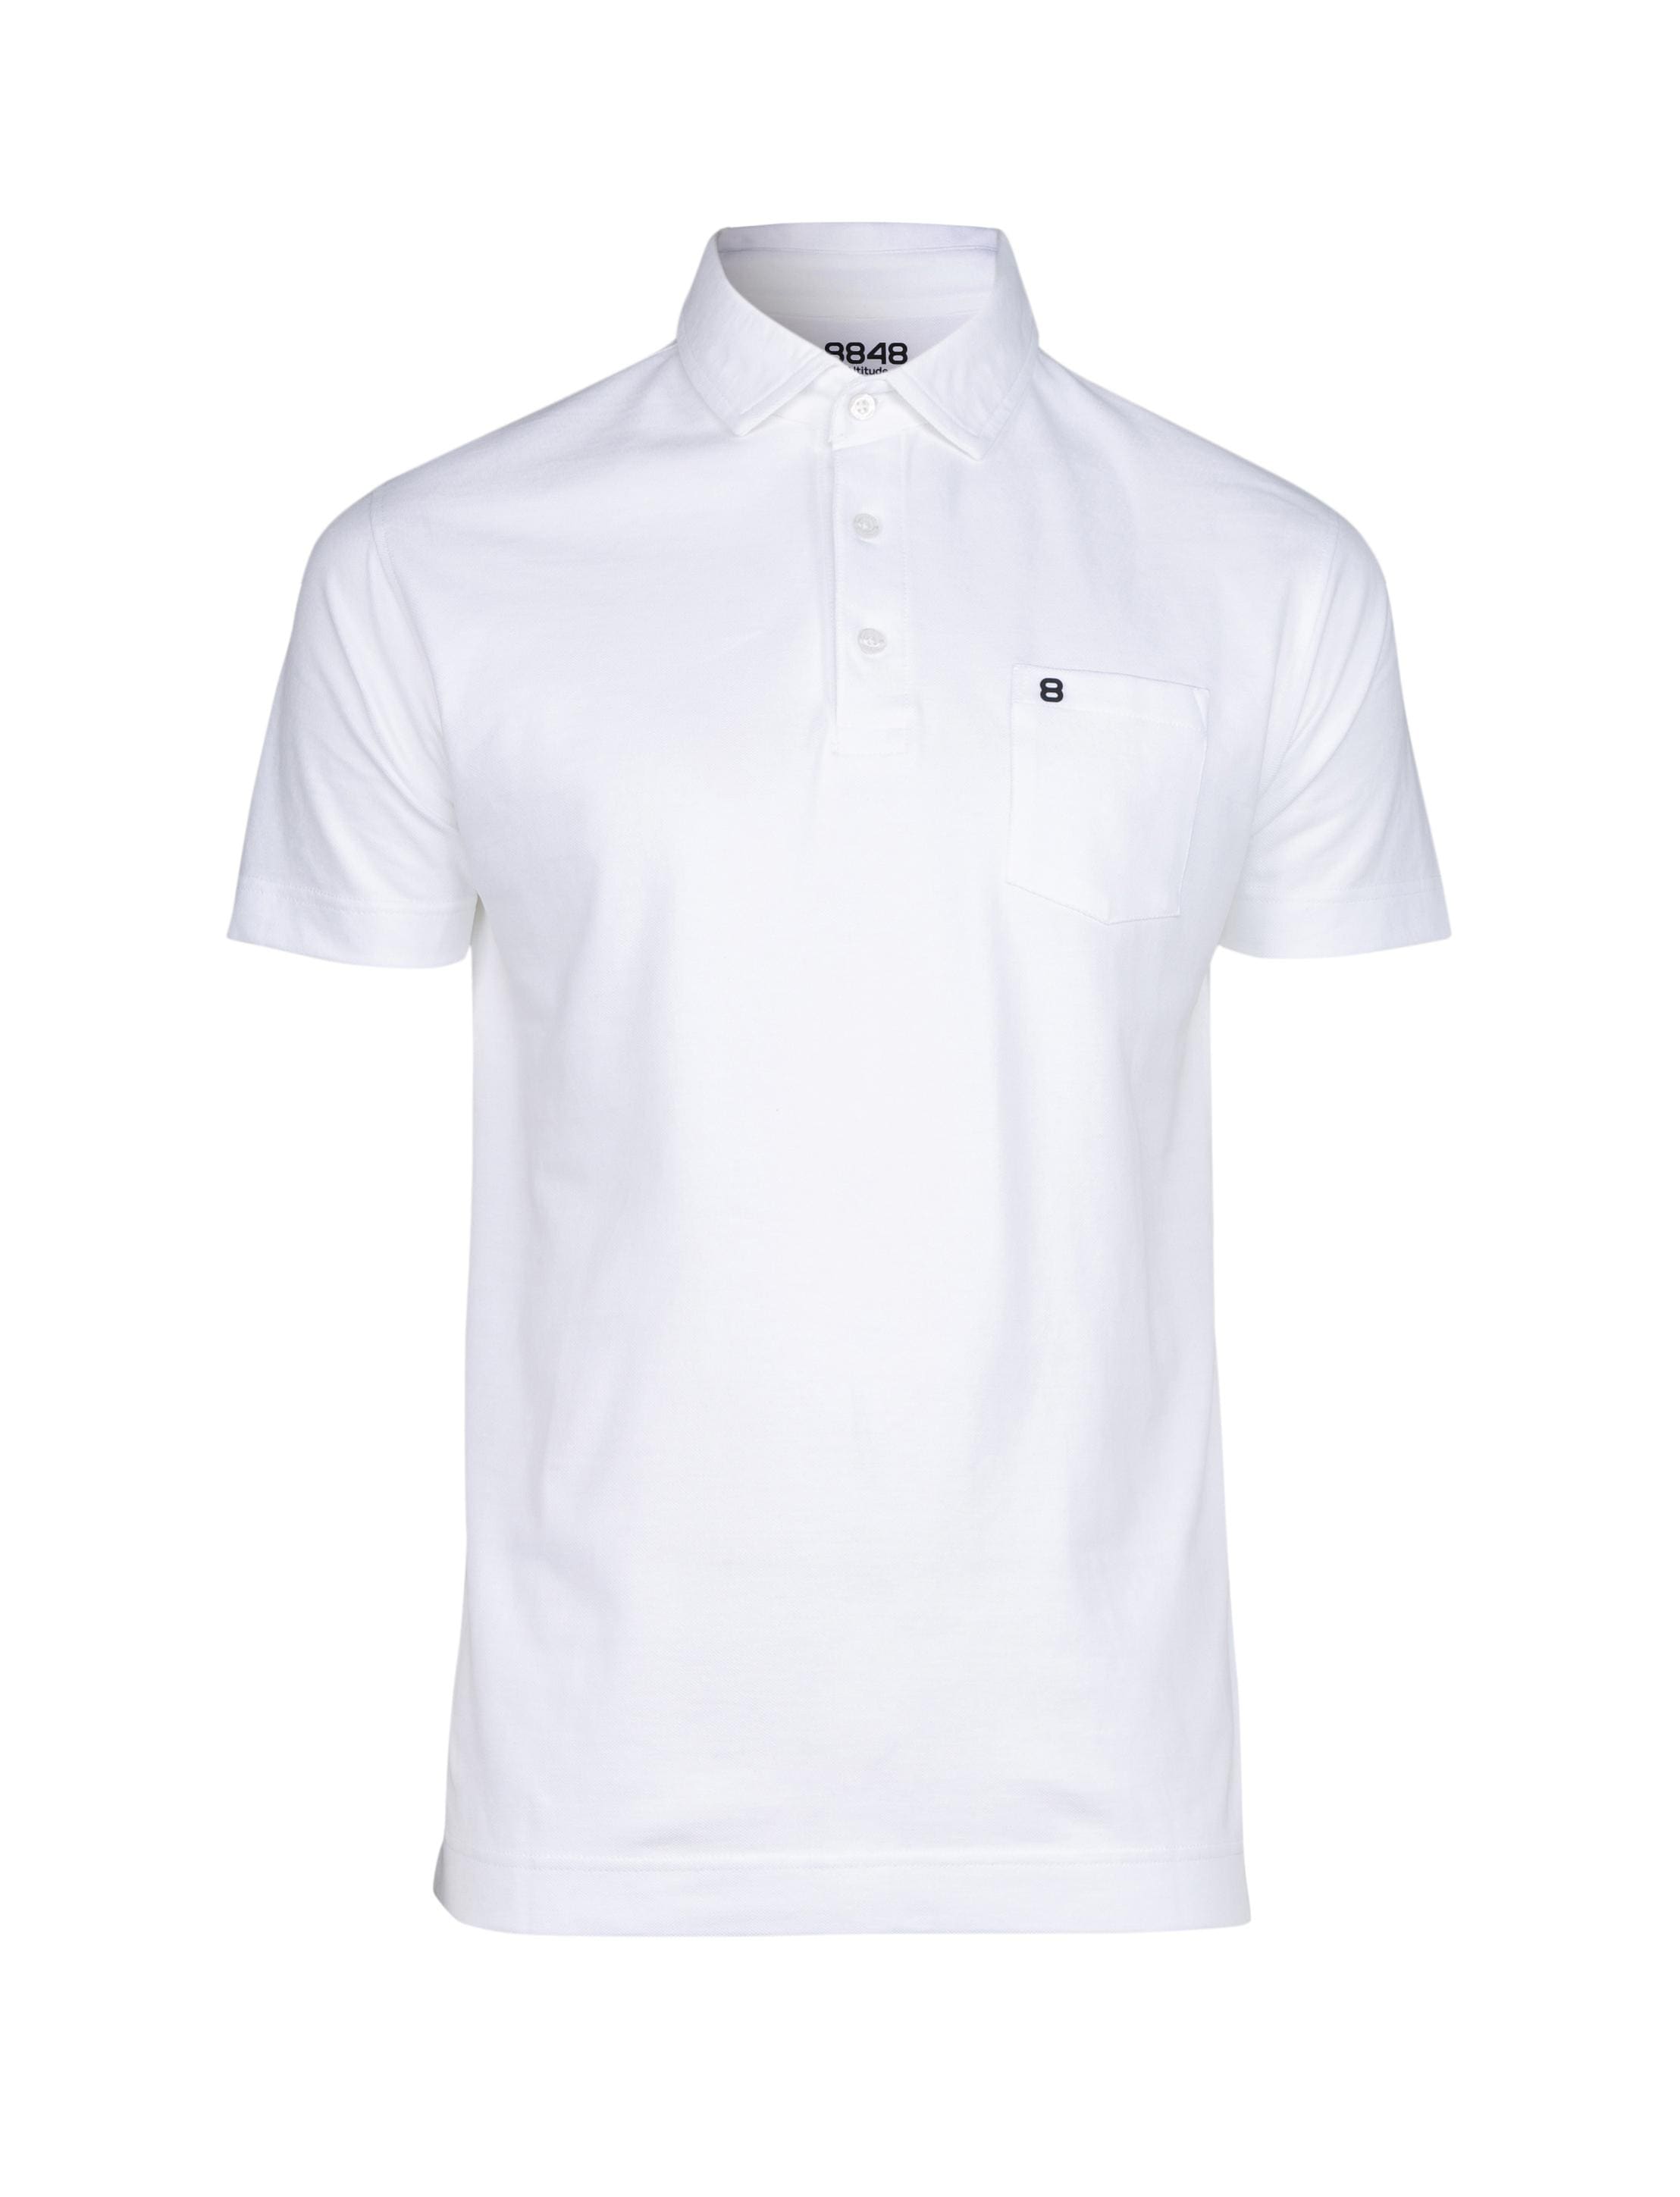 Tersus Polo Shirt White - Vit piké herr